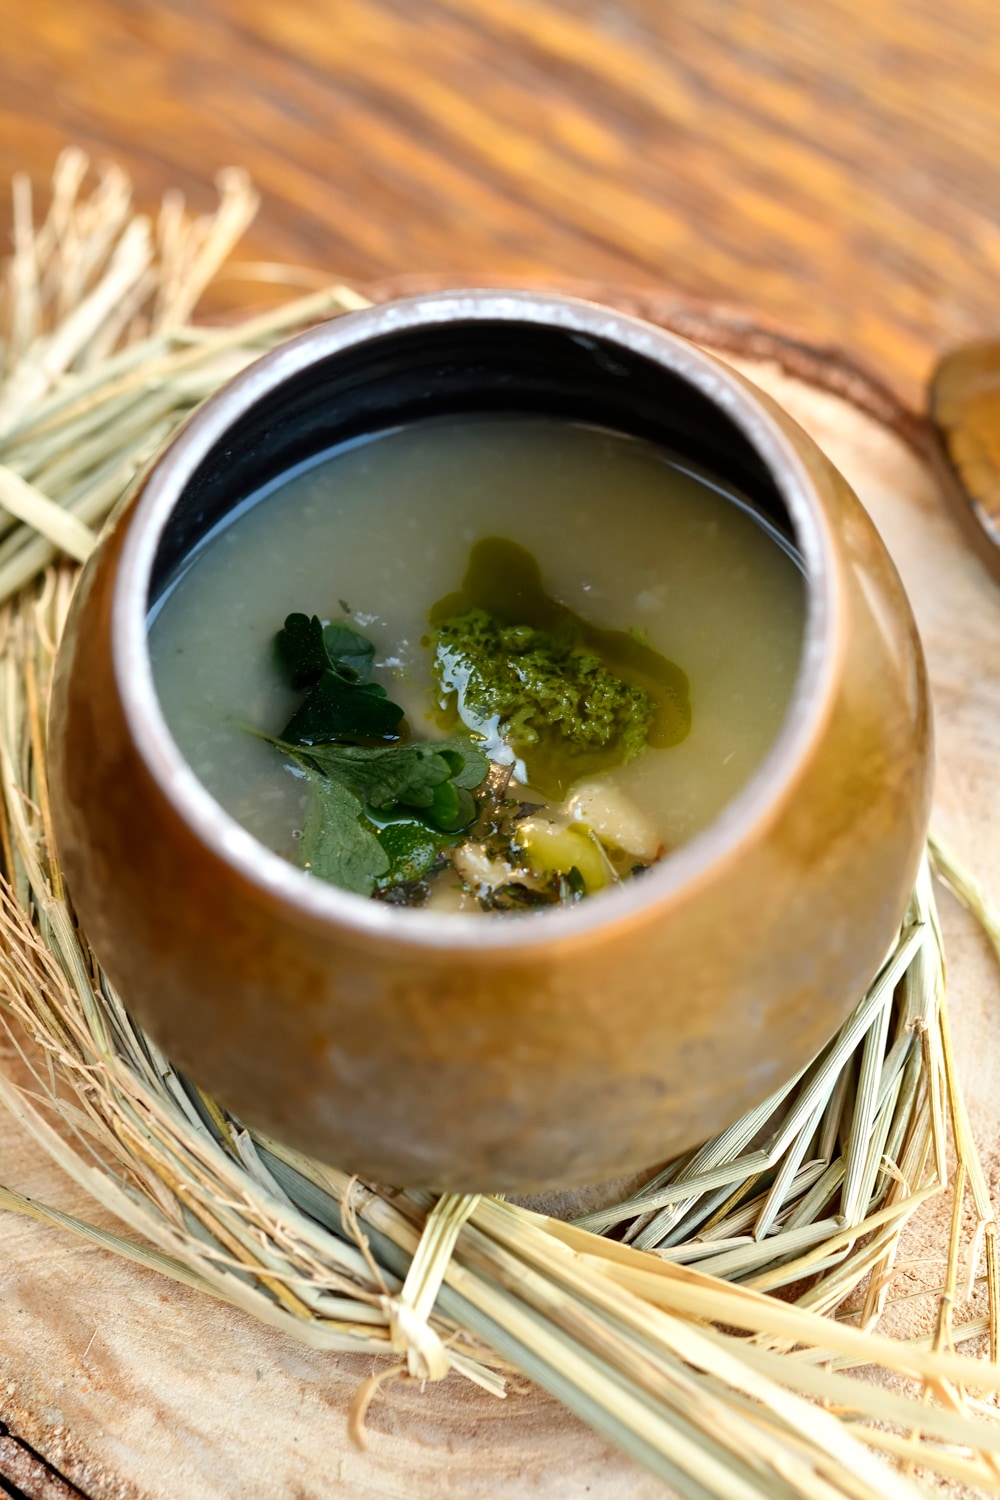 じゃがいもやたまねぎなどから作る「縄文スープ」は、とろりとして心が和む味わい。